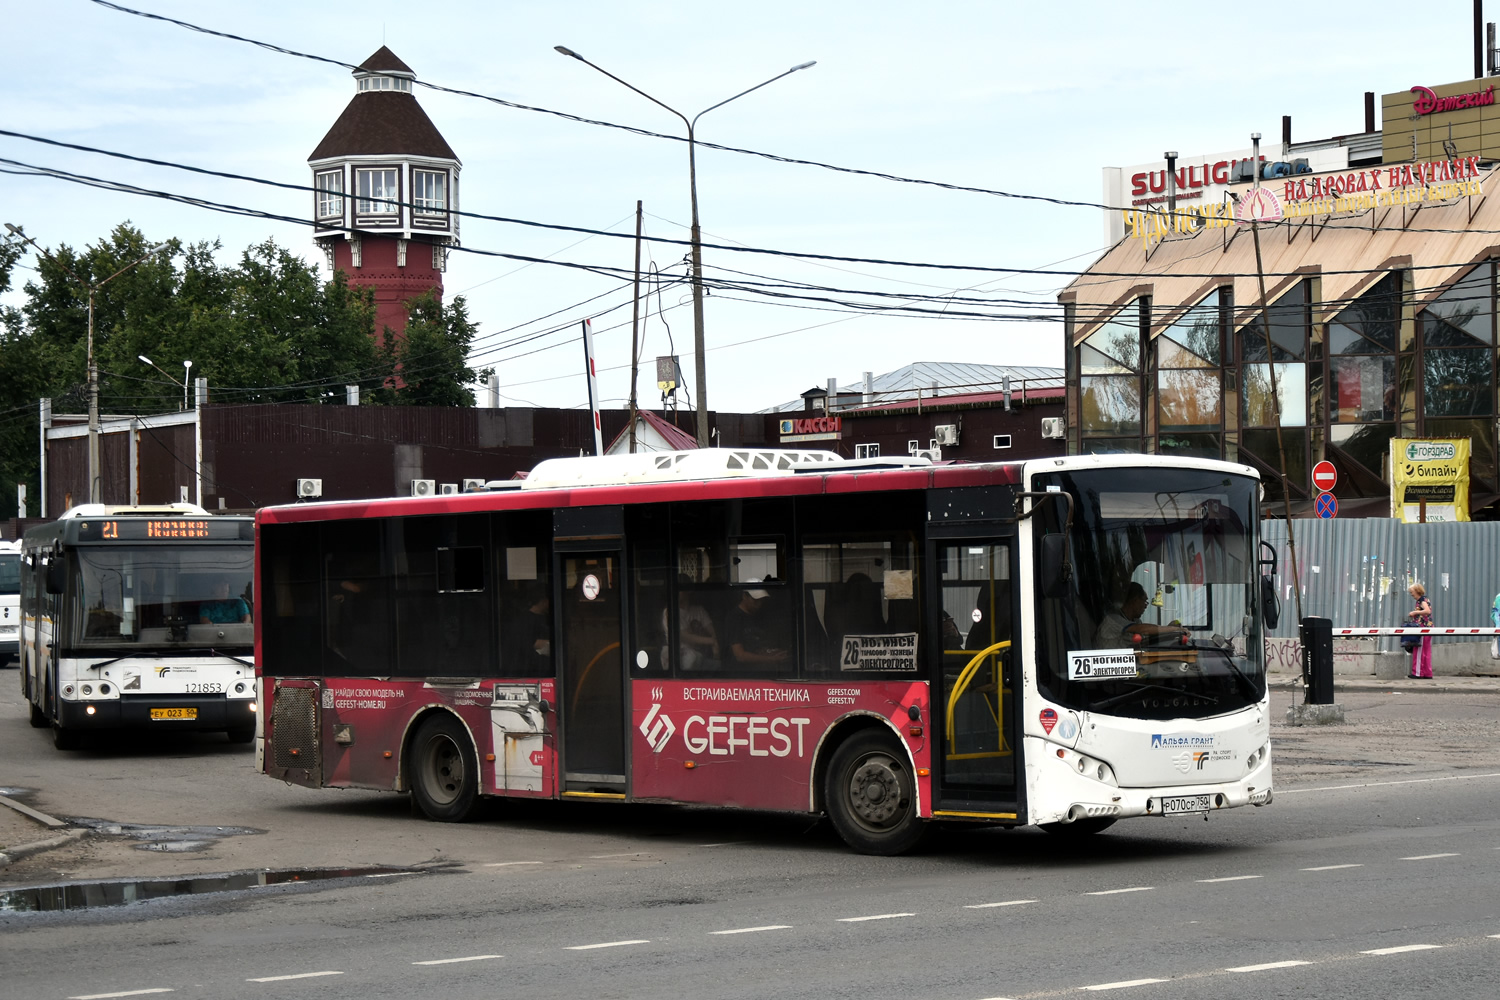 Moskevská oblast, Volgabus-5270.0H č. Р 070 СР 750